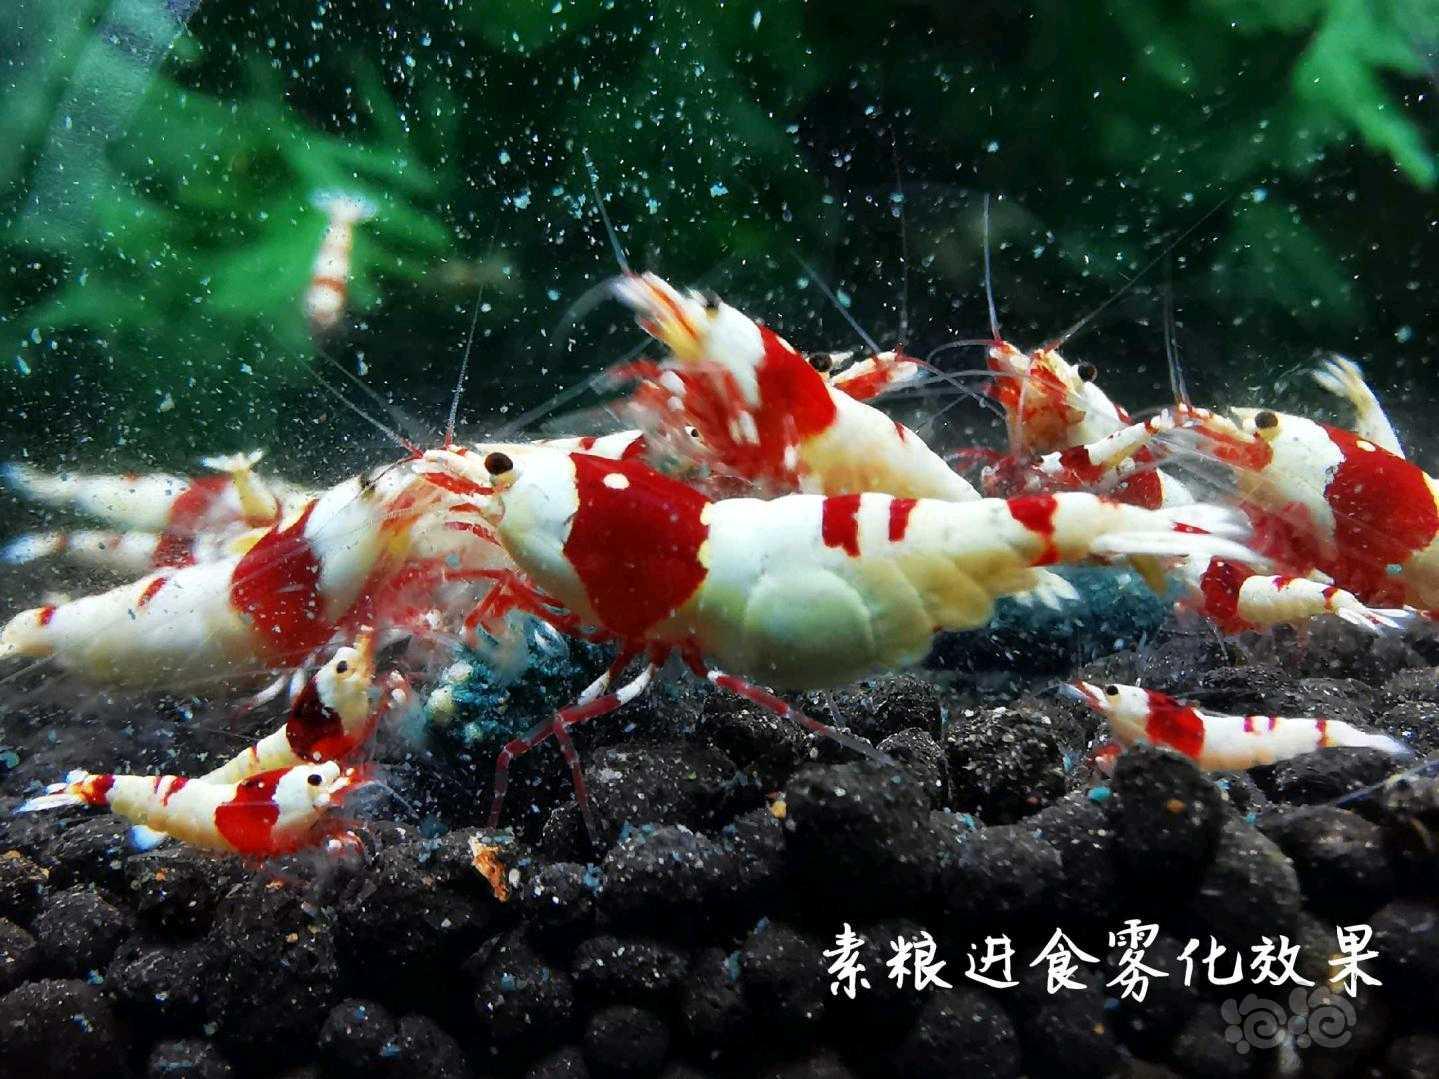 【用品】2021-04-21#RMB拍卖水晶虾饲料一份-图6